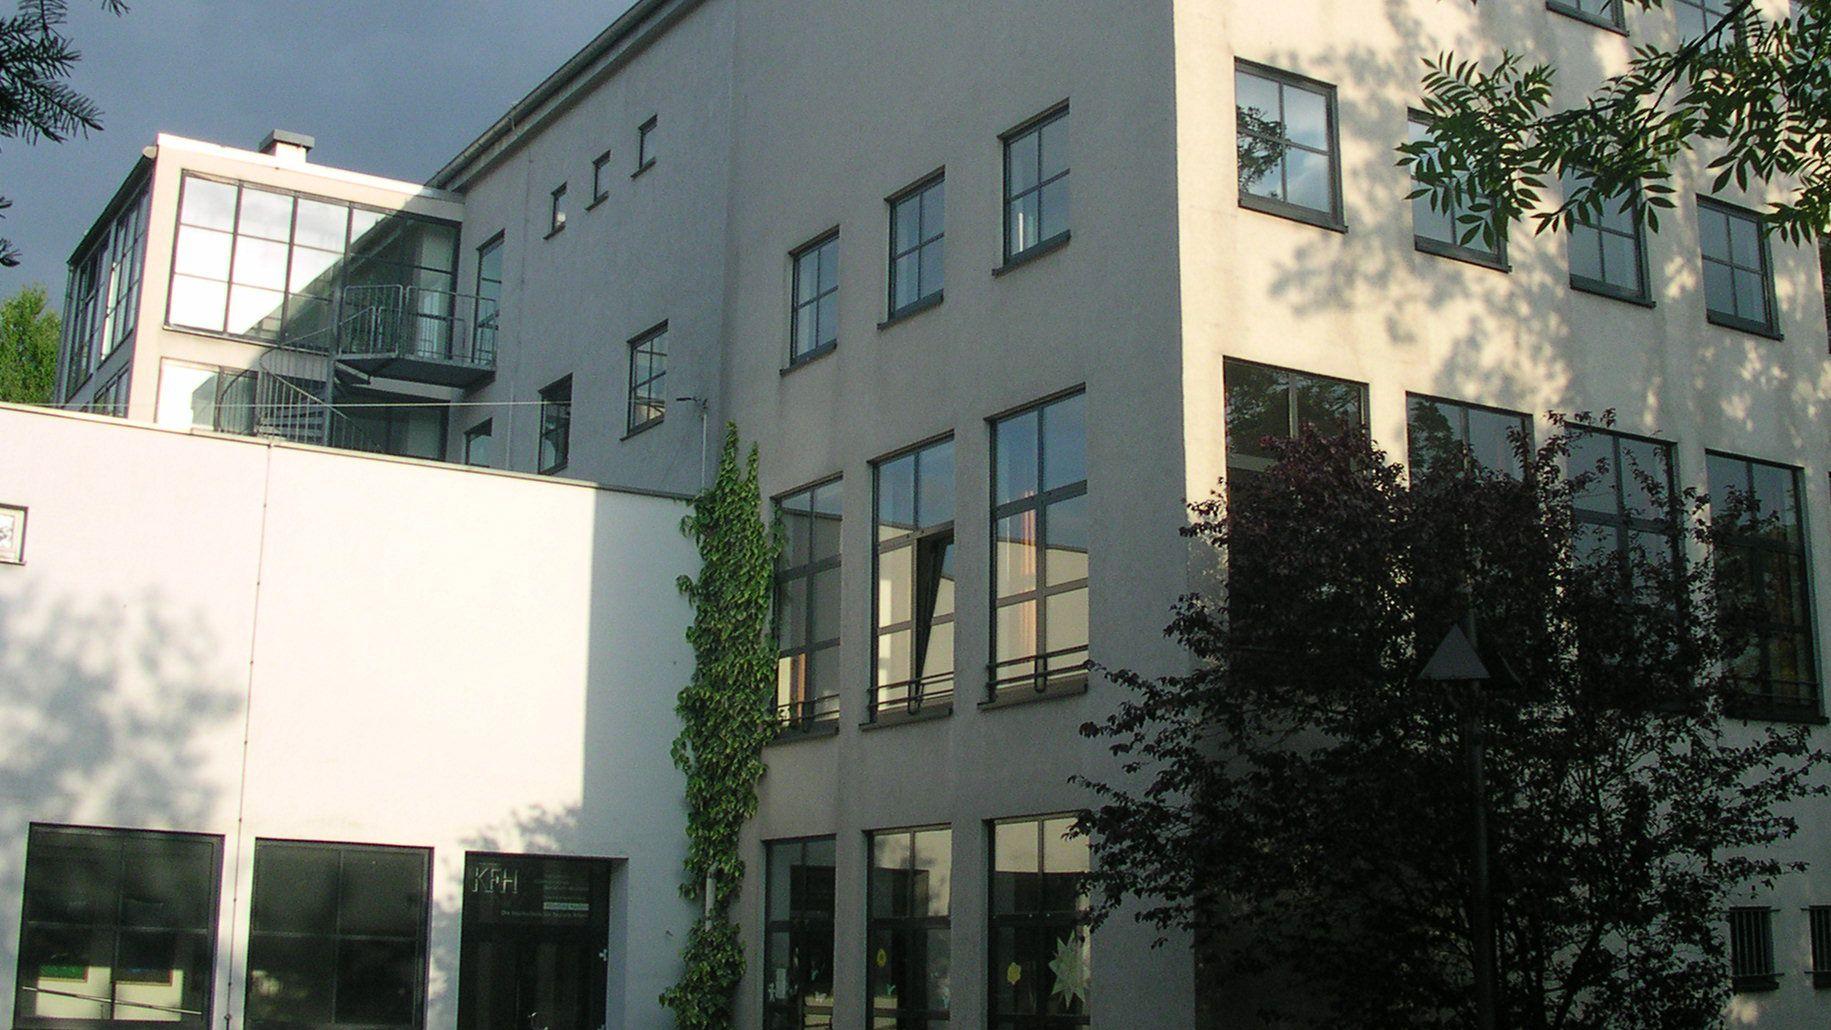 Seit 100 Jahren wird in Aachen Soziale Arbeit gelehrt, seit 1930 am Standort Robert-Schumann-Straße.